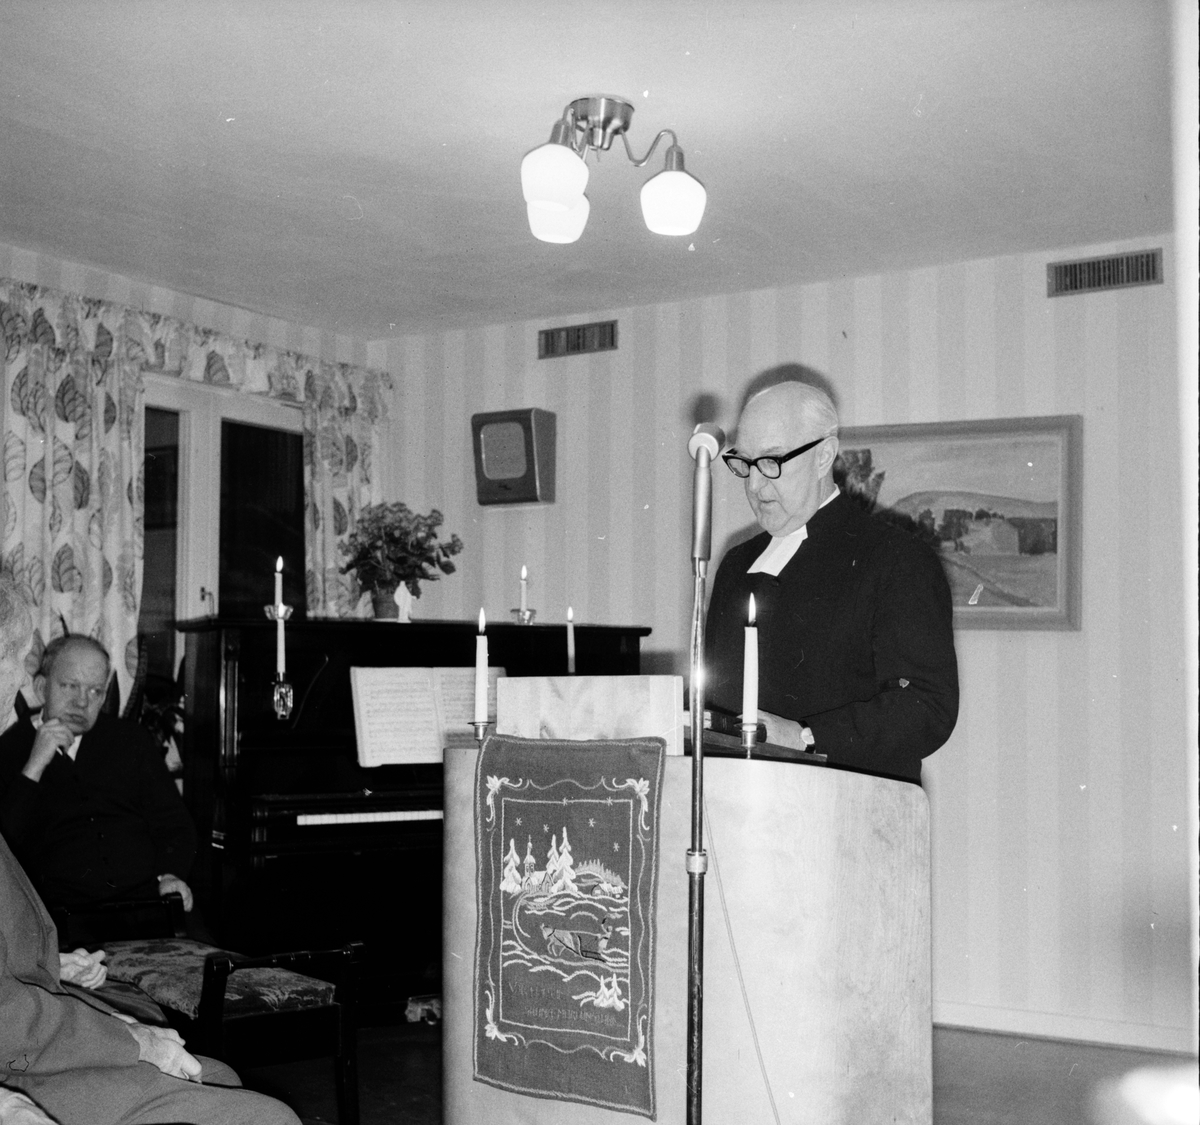 Arbrå,
Julotta på Stenbacka,
1967